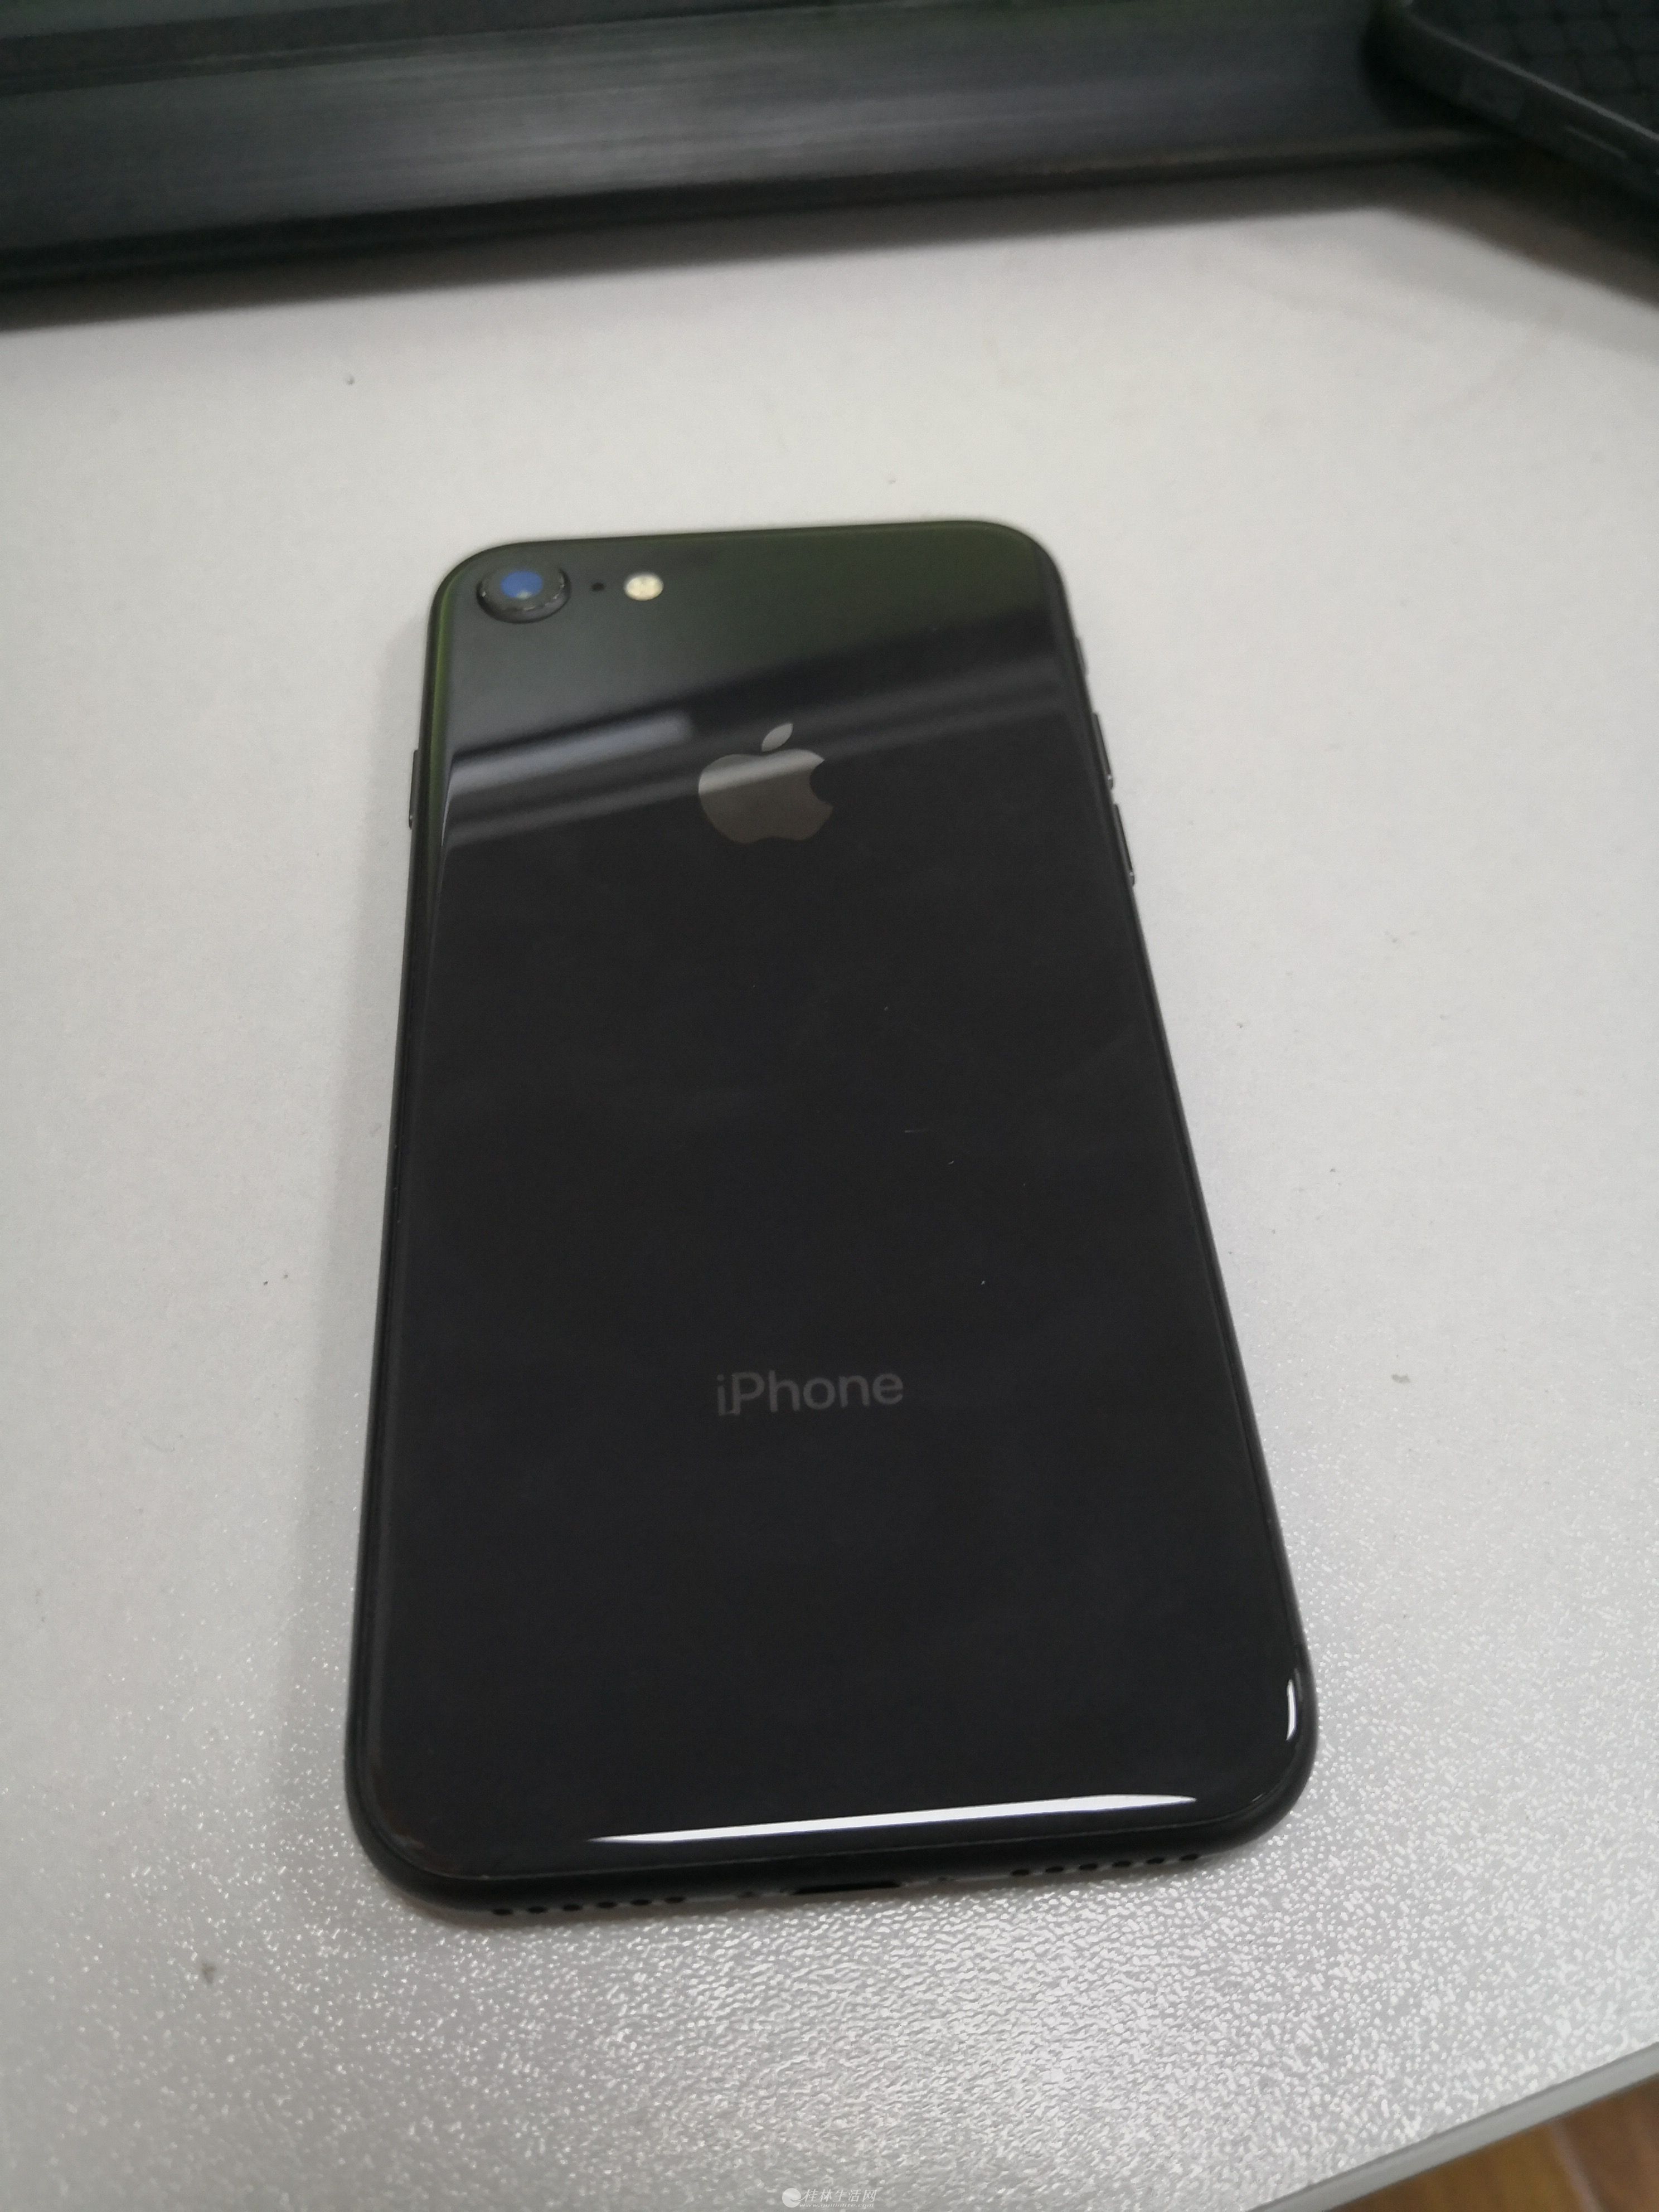 18年 2月买的 iphone8 黑色 64G 几乎全新 想换